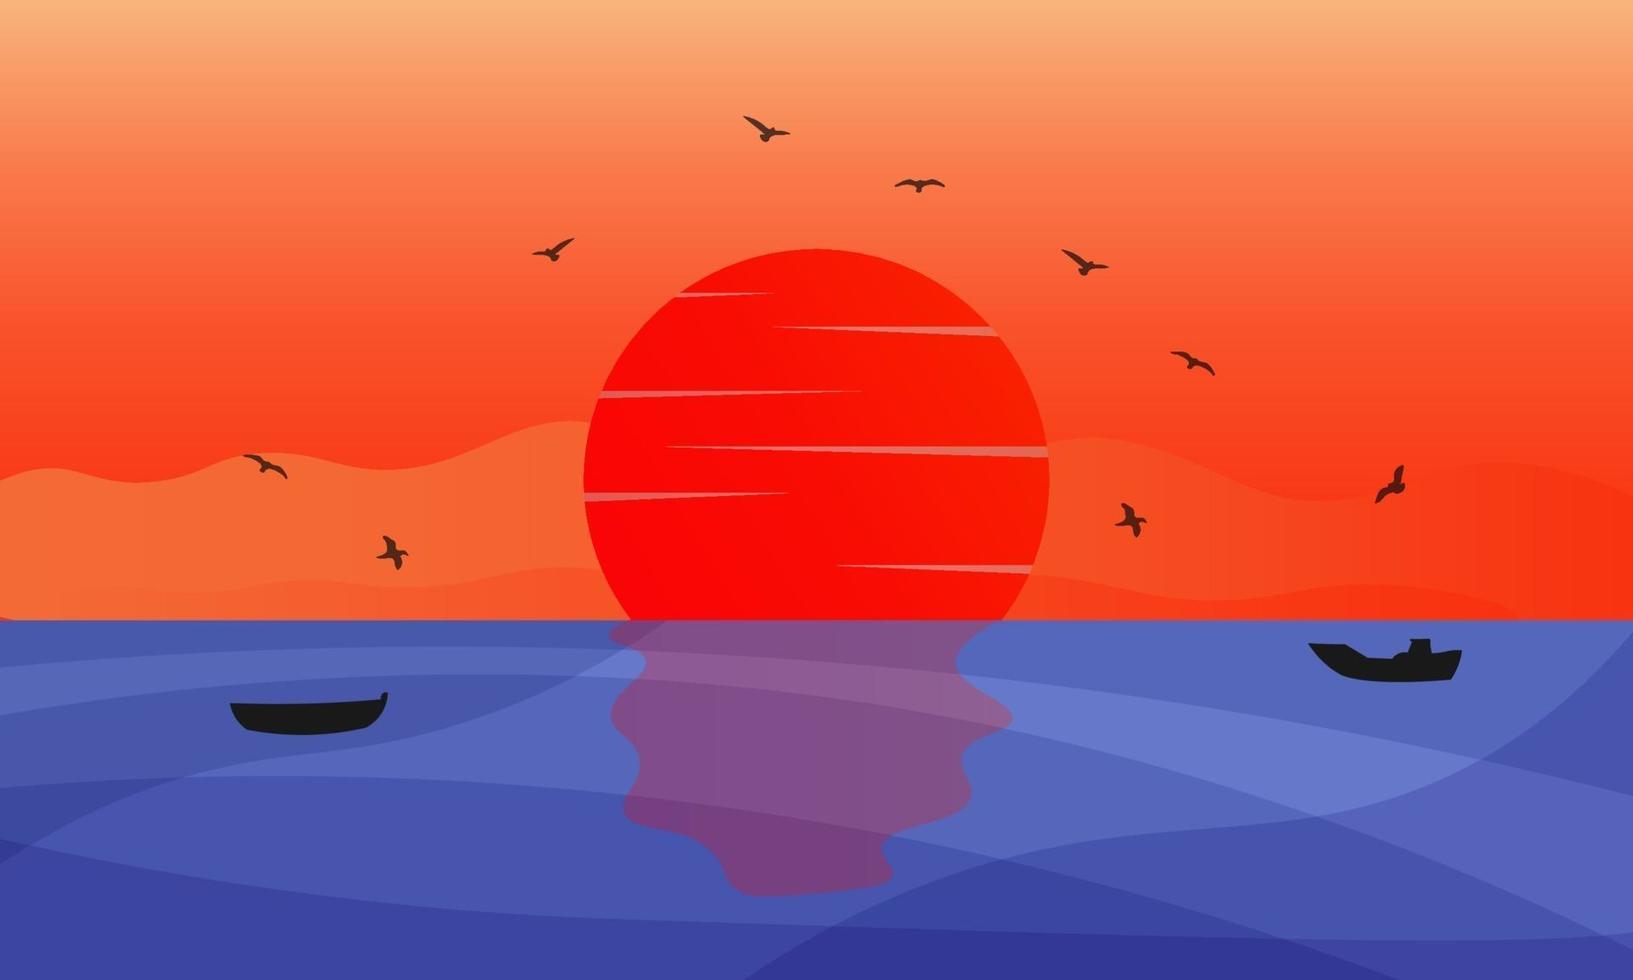 fond d & # 39; illustration coucher de soleil sur la mer avec des oiseaux et des bateaux vecteur